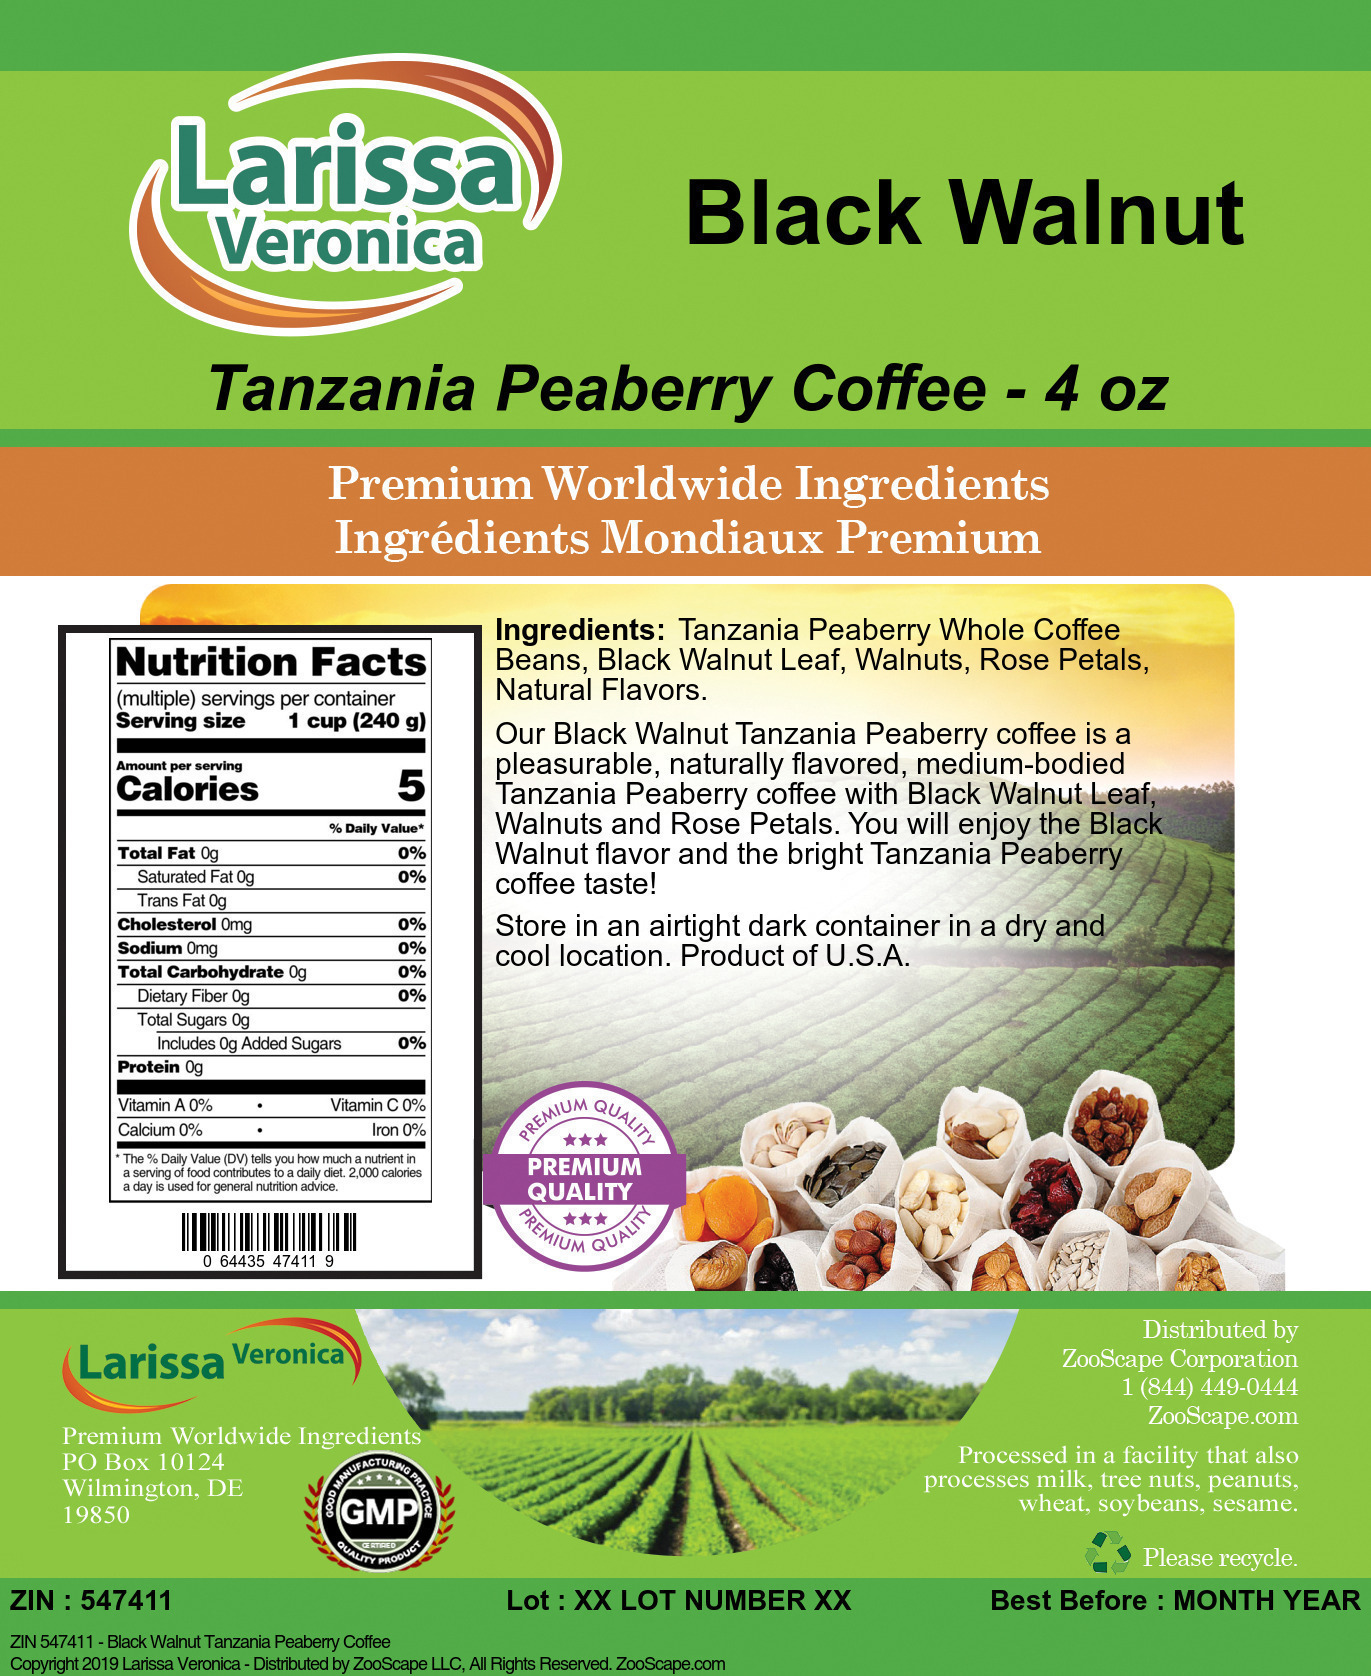 Black Walnut Tanzania Peaberry Coffee - Label